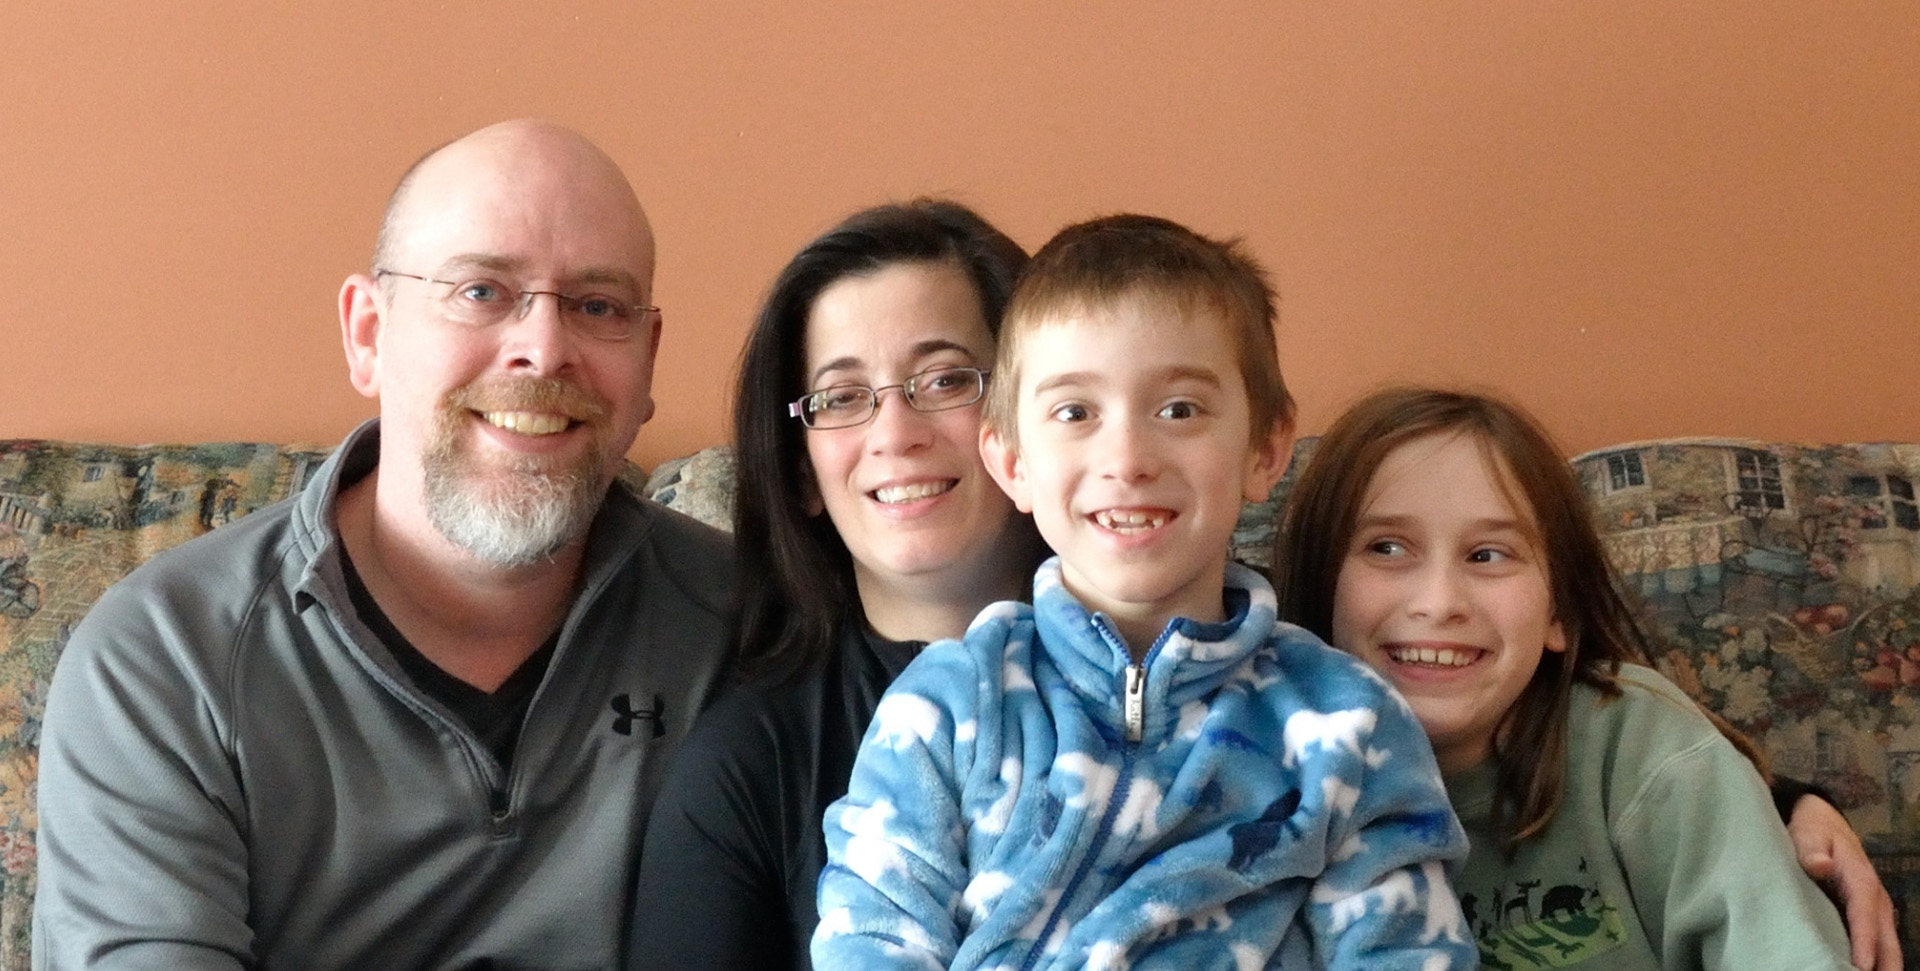 Comment vit-on avec une maladie rare? « On vit un jour à la fois et on savoure les moments heureux », dit Malinda, entourée de son mari Sean et leurs enfants Megan et Liam.